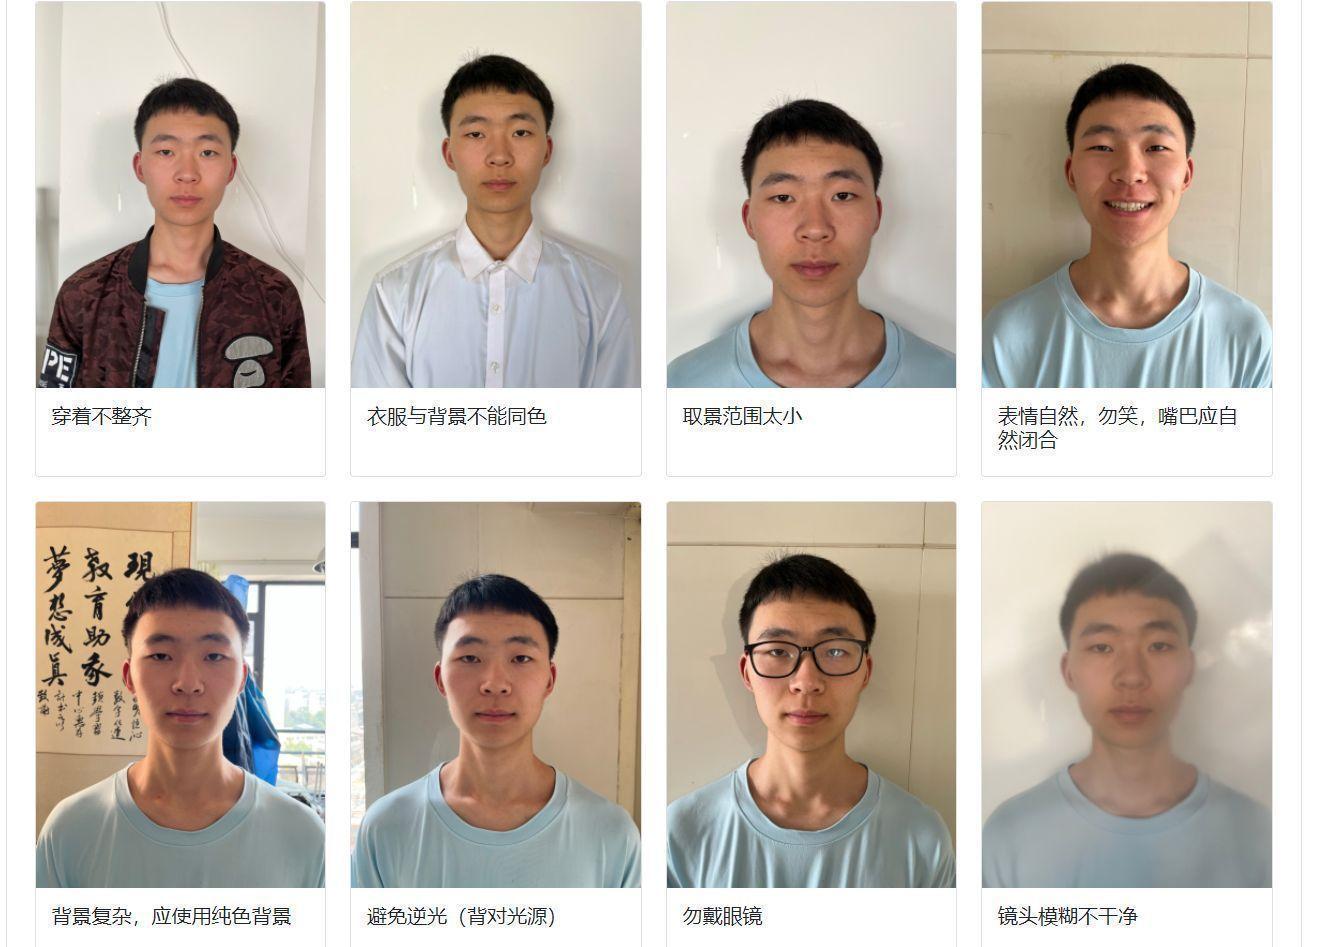 云南省大学生毕业图像采集流程及毕业照上传常见问题